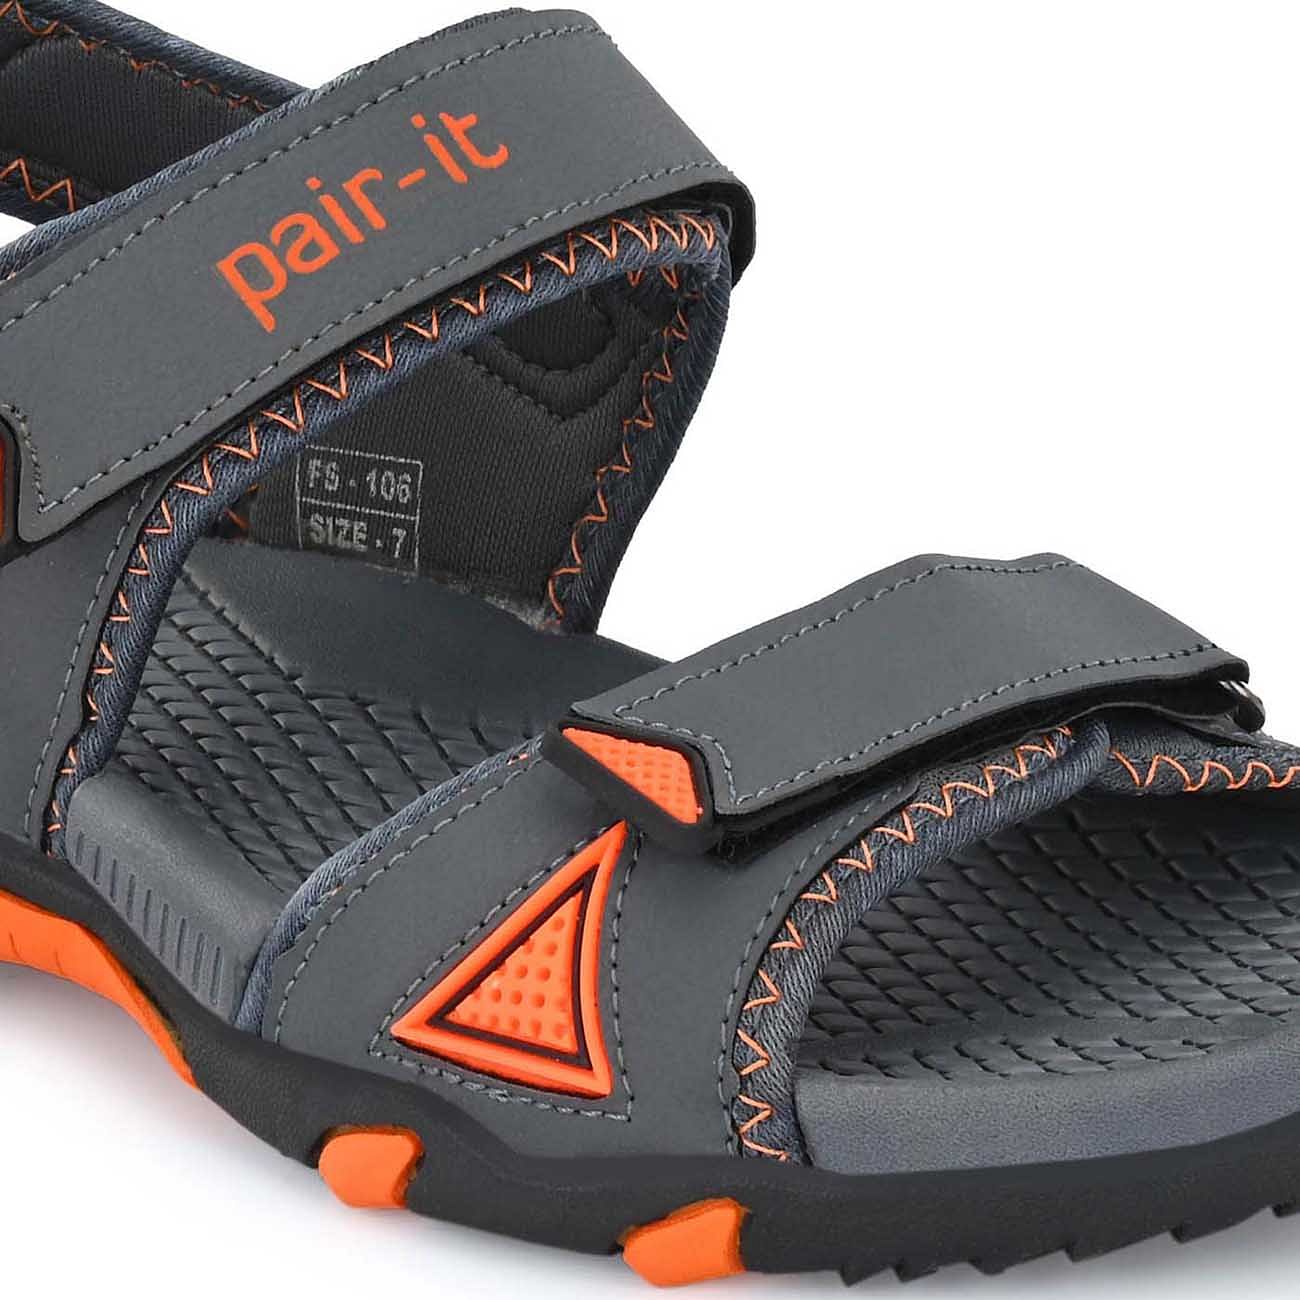 Pair-it Mn Sandals - D.Grey /Orange-UN-Mn-Sp-Sandal006